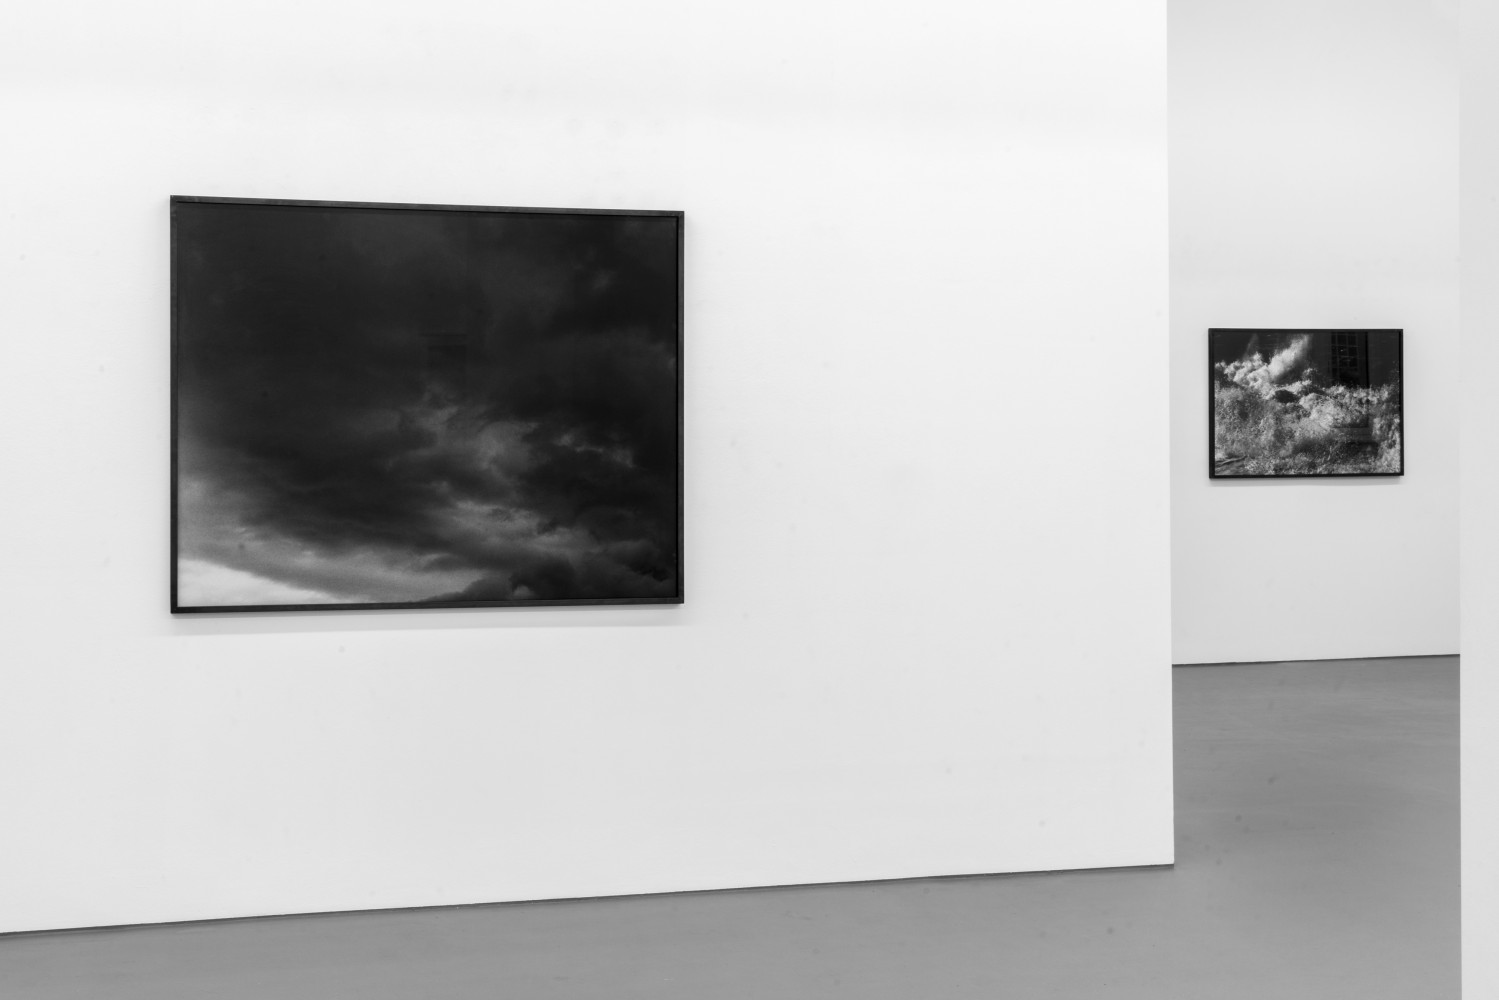 Balthasar Burkhard, ‘Reise ans Mittelmeer’, Installation view, Buchmann Galerie, 2021